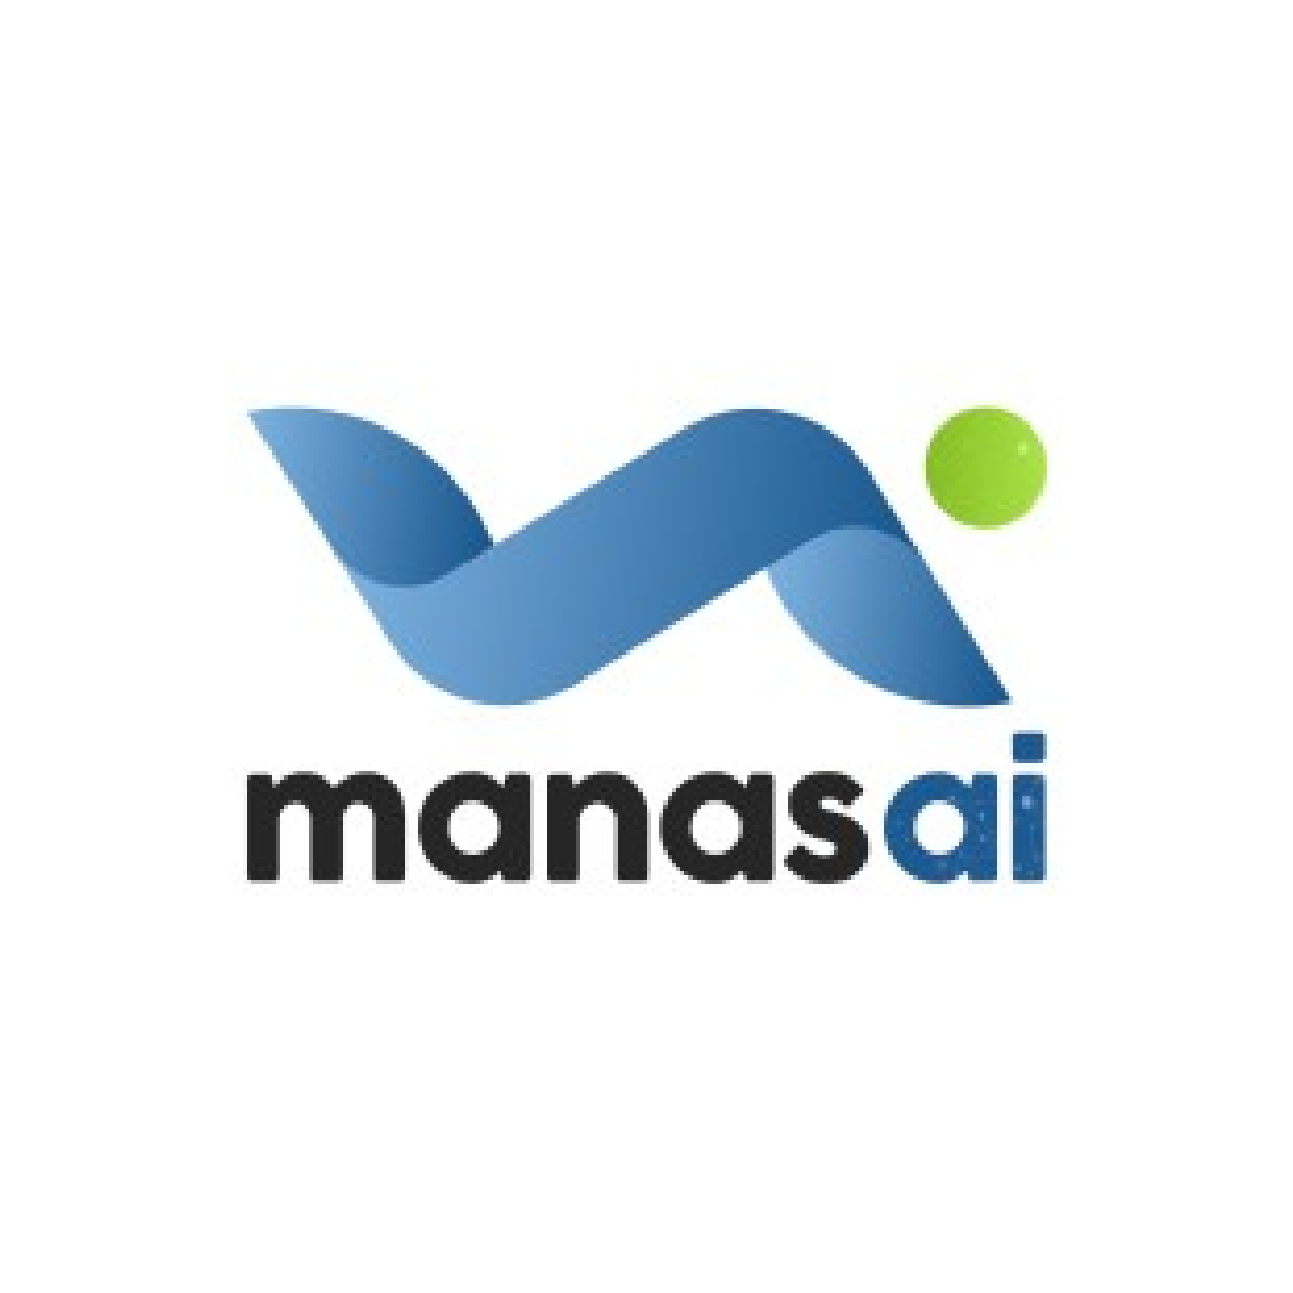 Manas AI